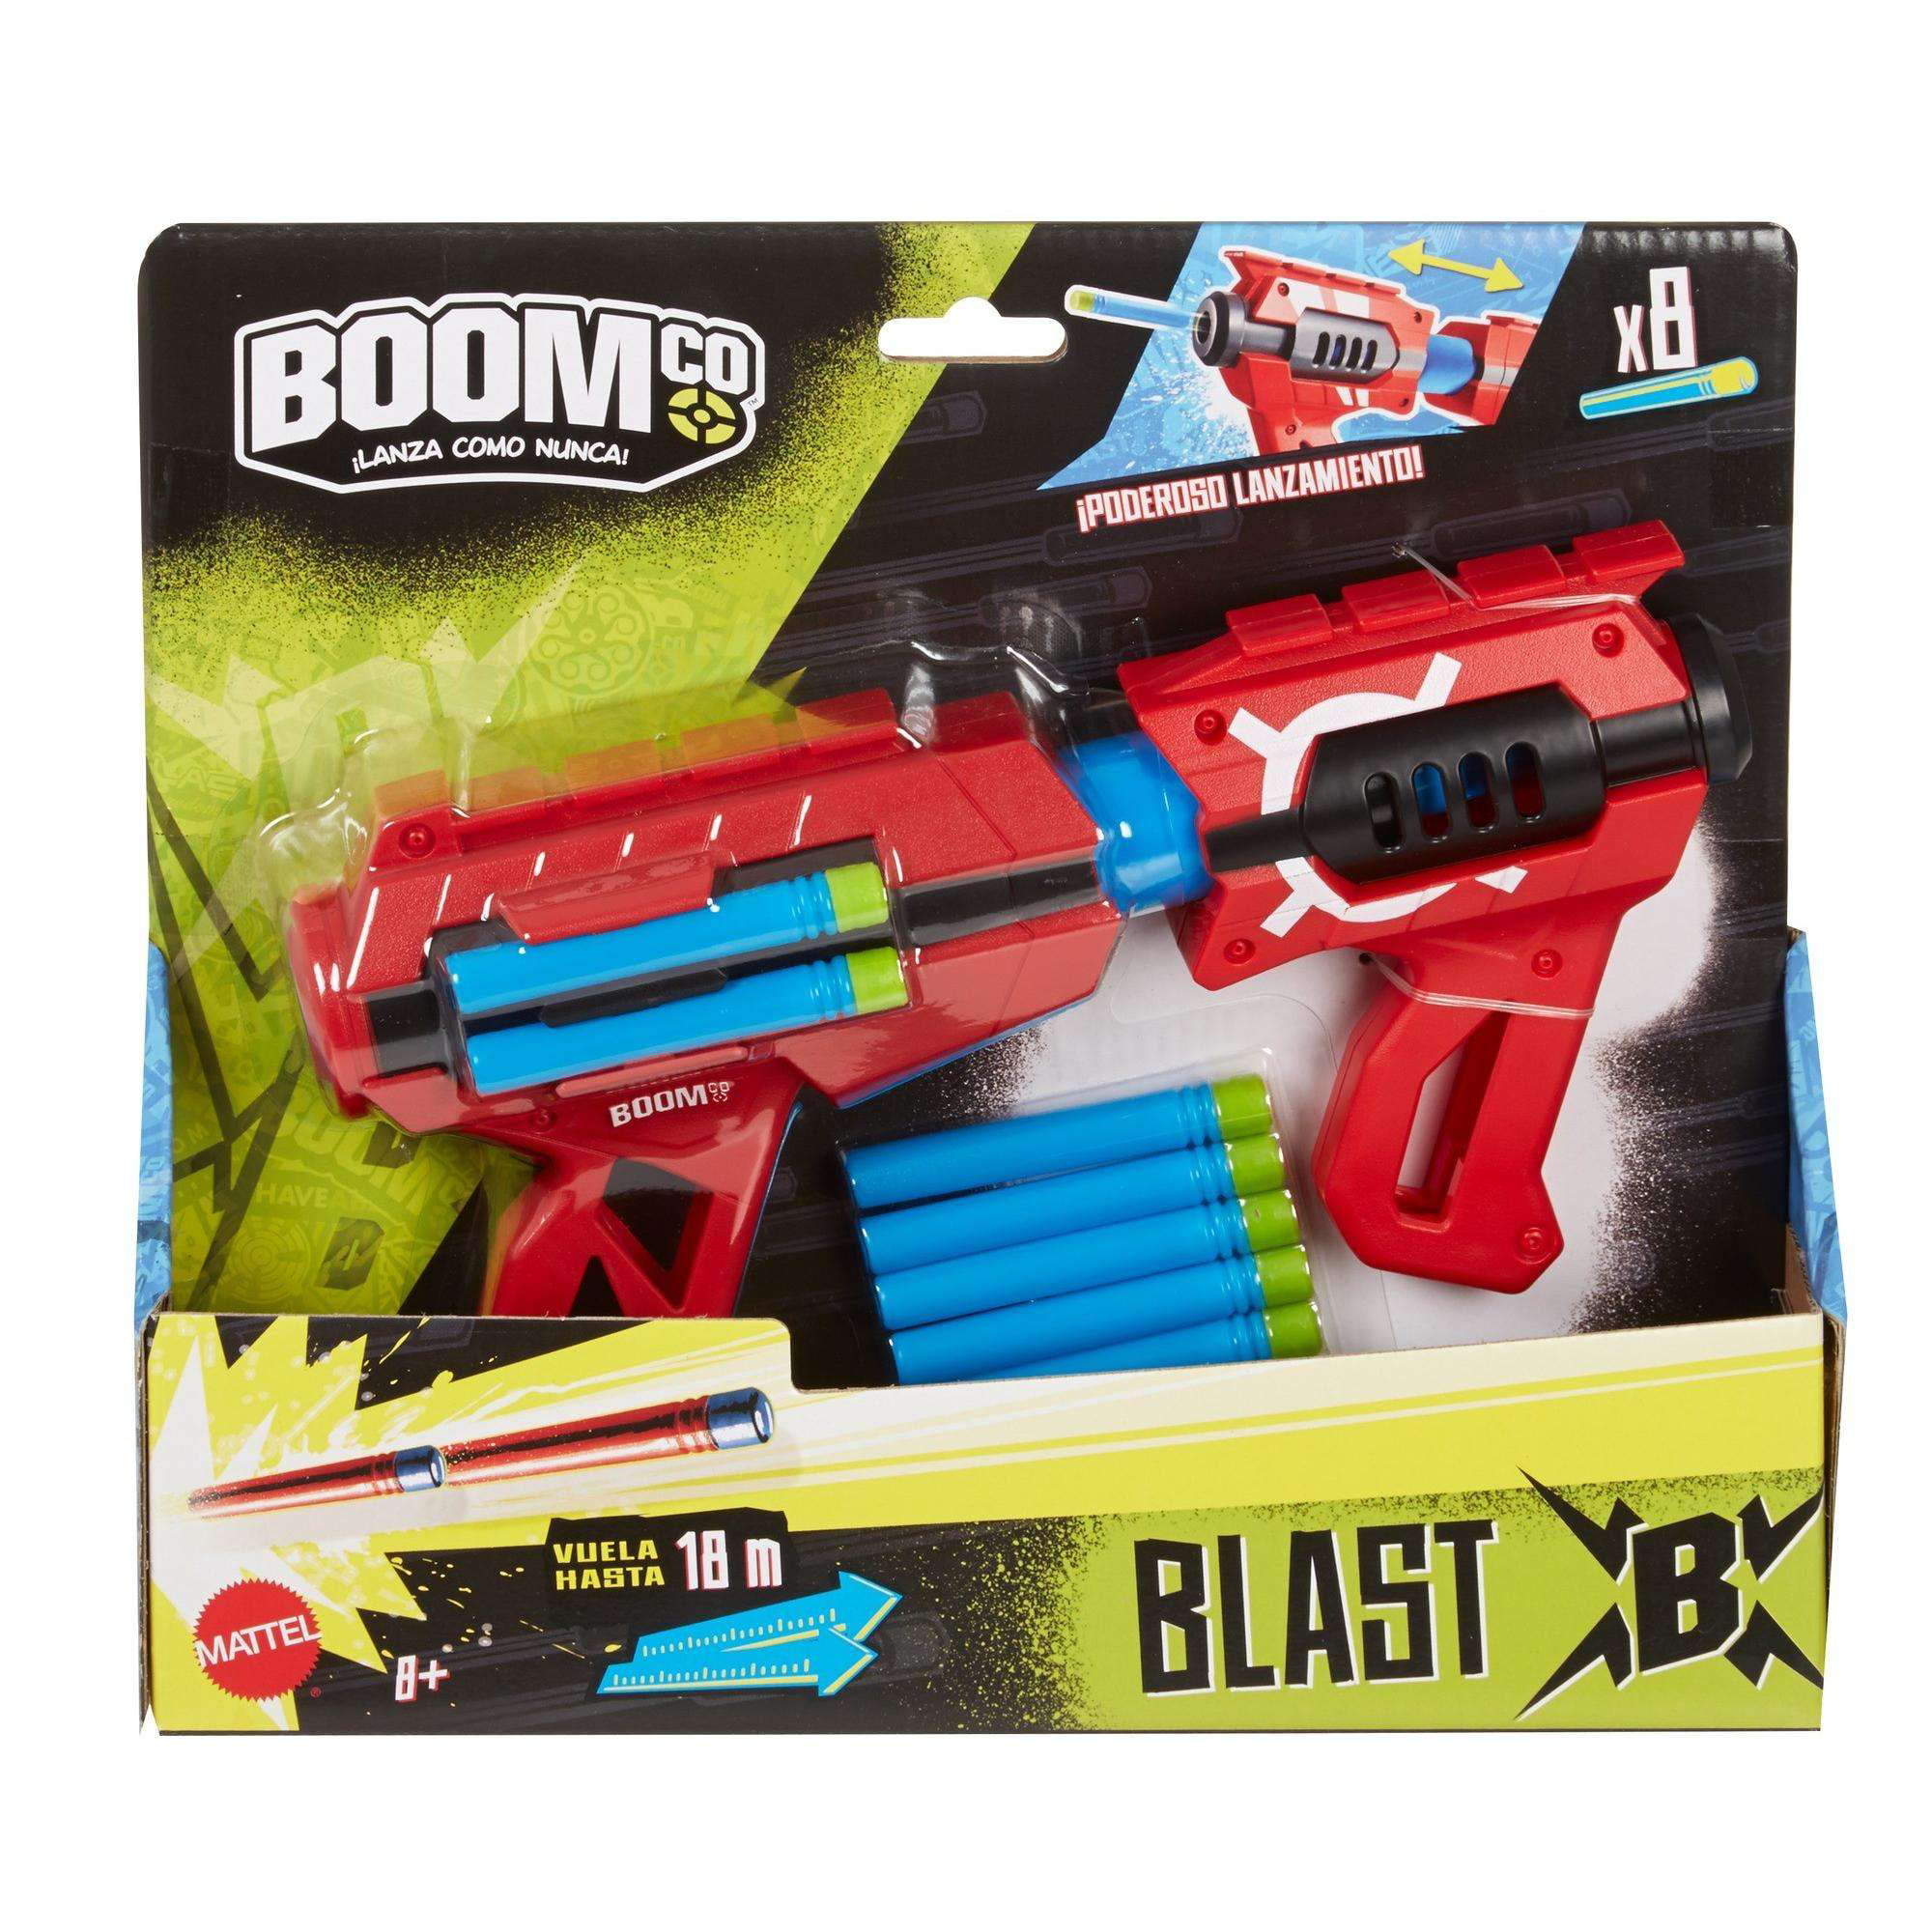 Mattel BOOMco CFD42 Power Slam 